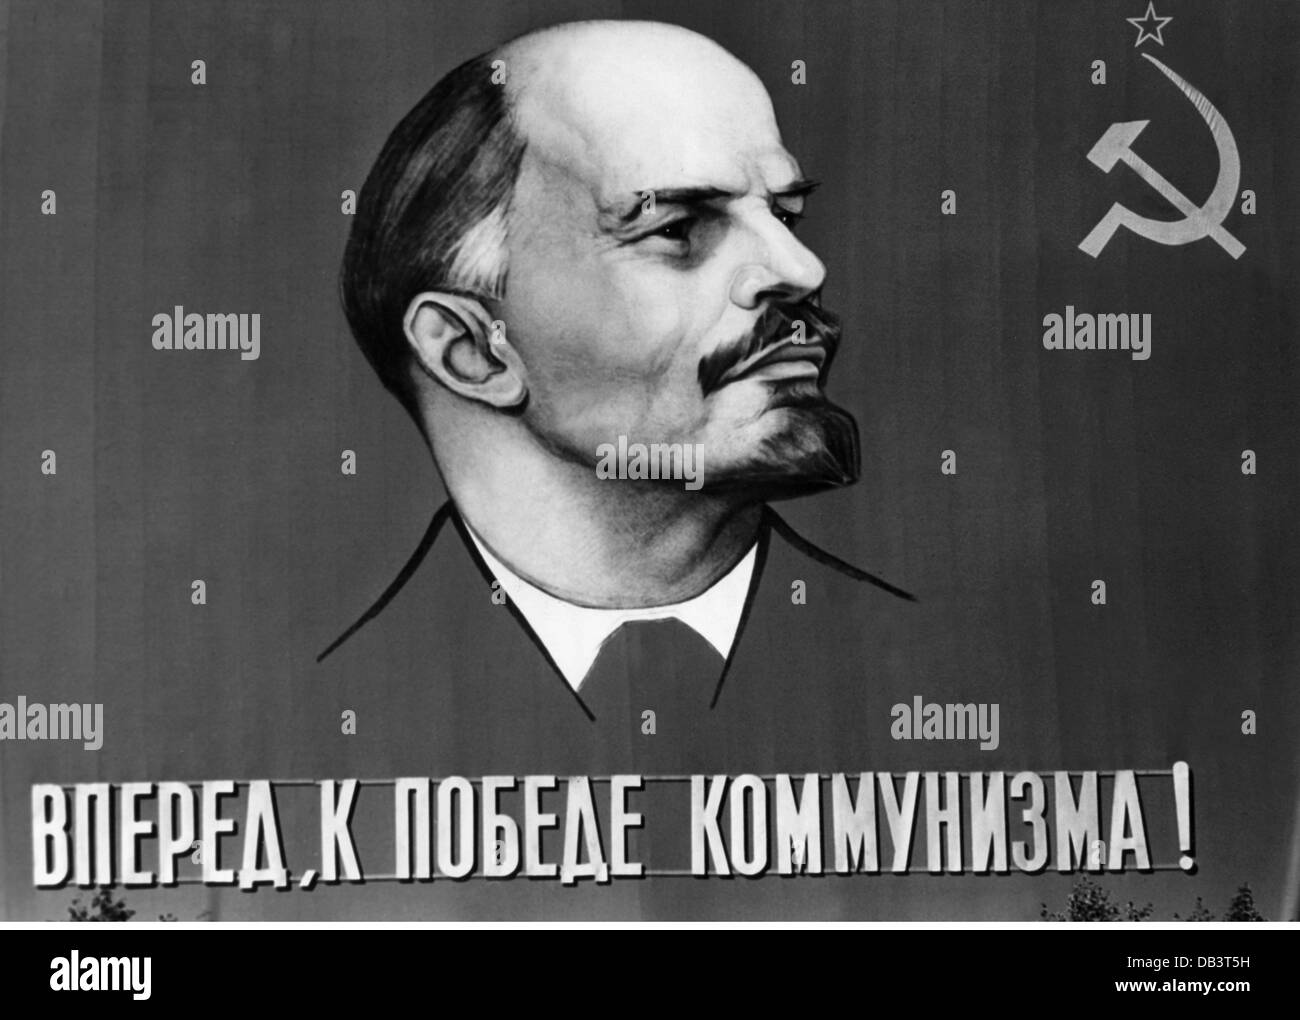 Lenin (Vladimir Ilyich Ulyanov), 22.4.1870 - 21.1.1924, politico russo, ritratto, su un poster gigante, 1.5.1970, Foto Stock